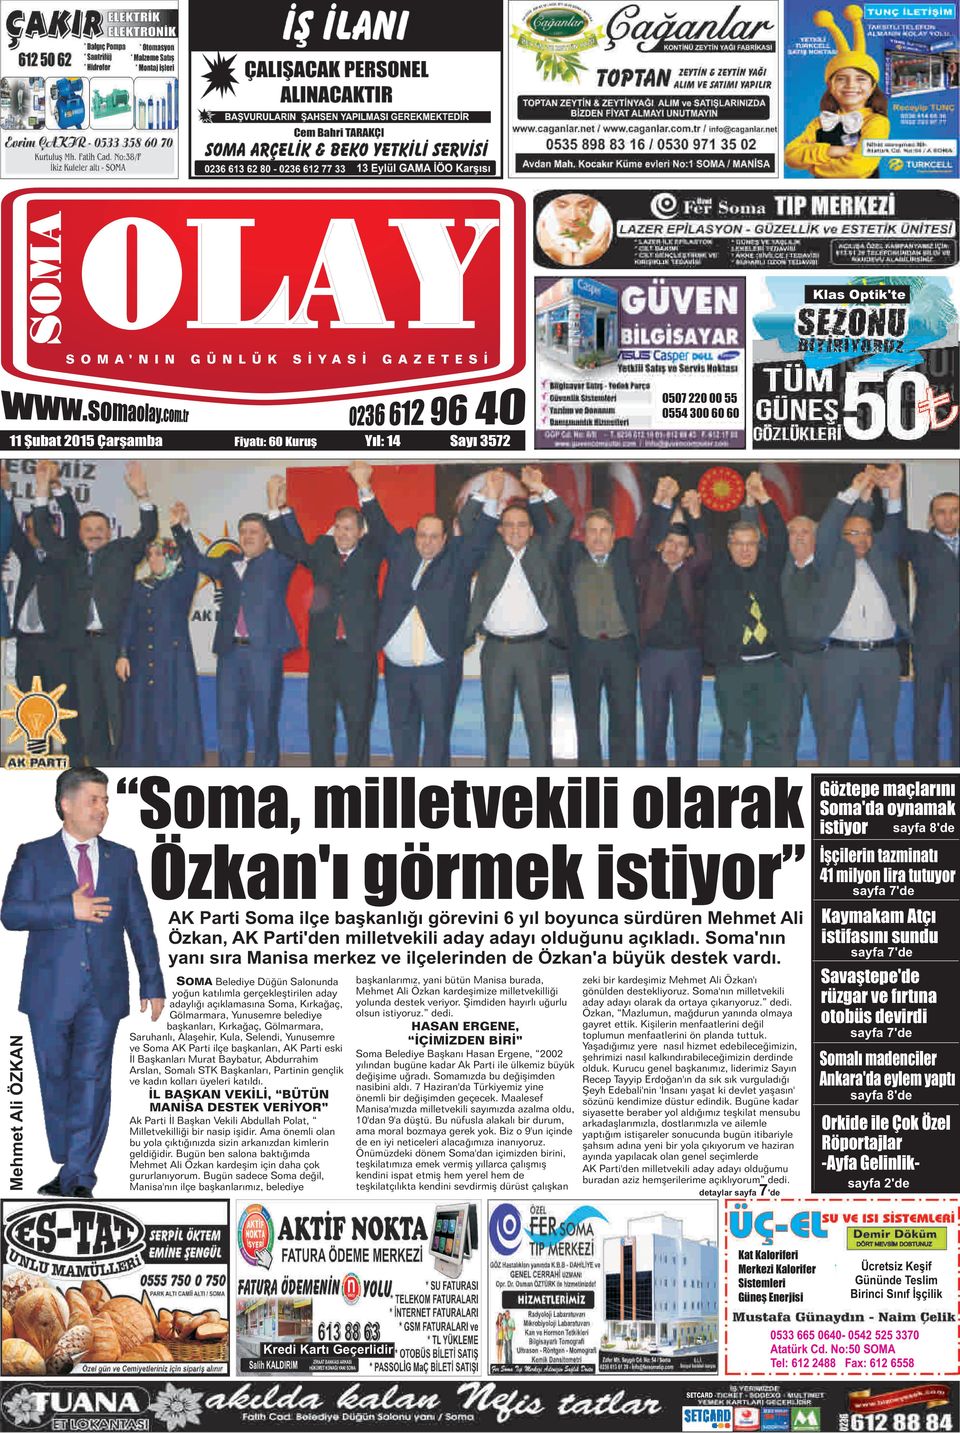 SOMA Belediye Düğün Salonunda başkanlarımız, yani bütün Manisa burada, zeki bir kardeşimiz Mehmet Ali Özkan'ı yoğun katılımla gerçekleştirilen aday Mehmet Ali Özkan kardeşimize milletvekilliği